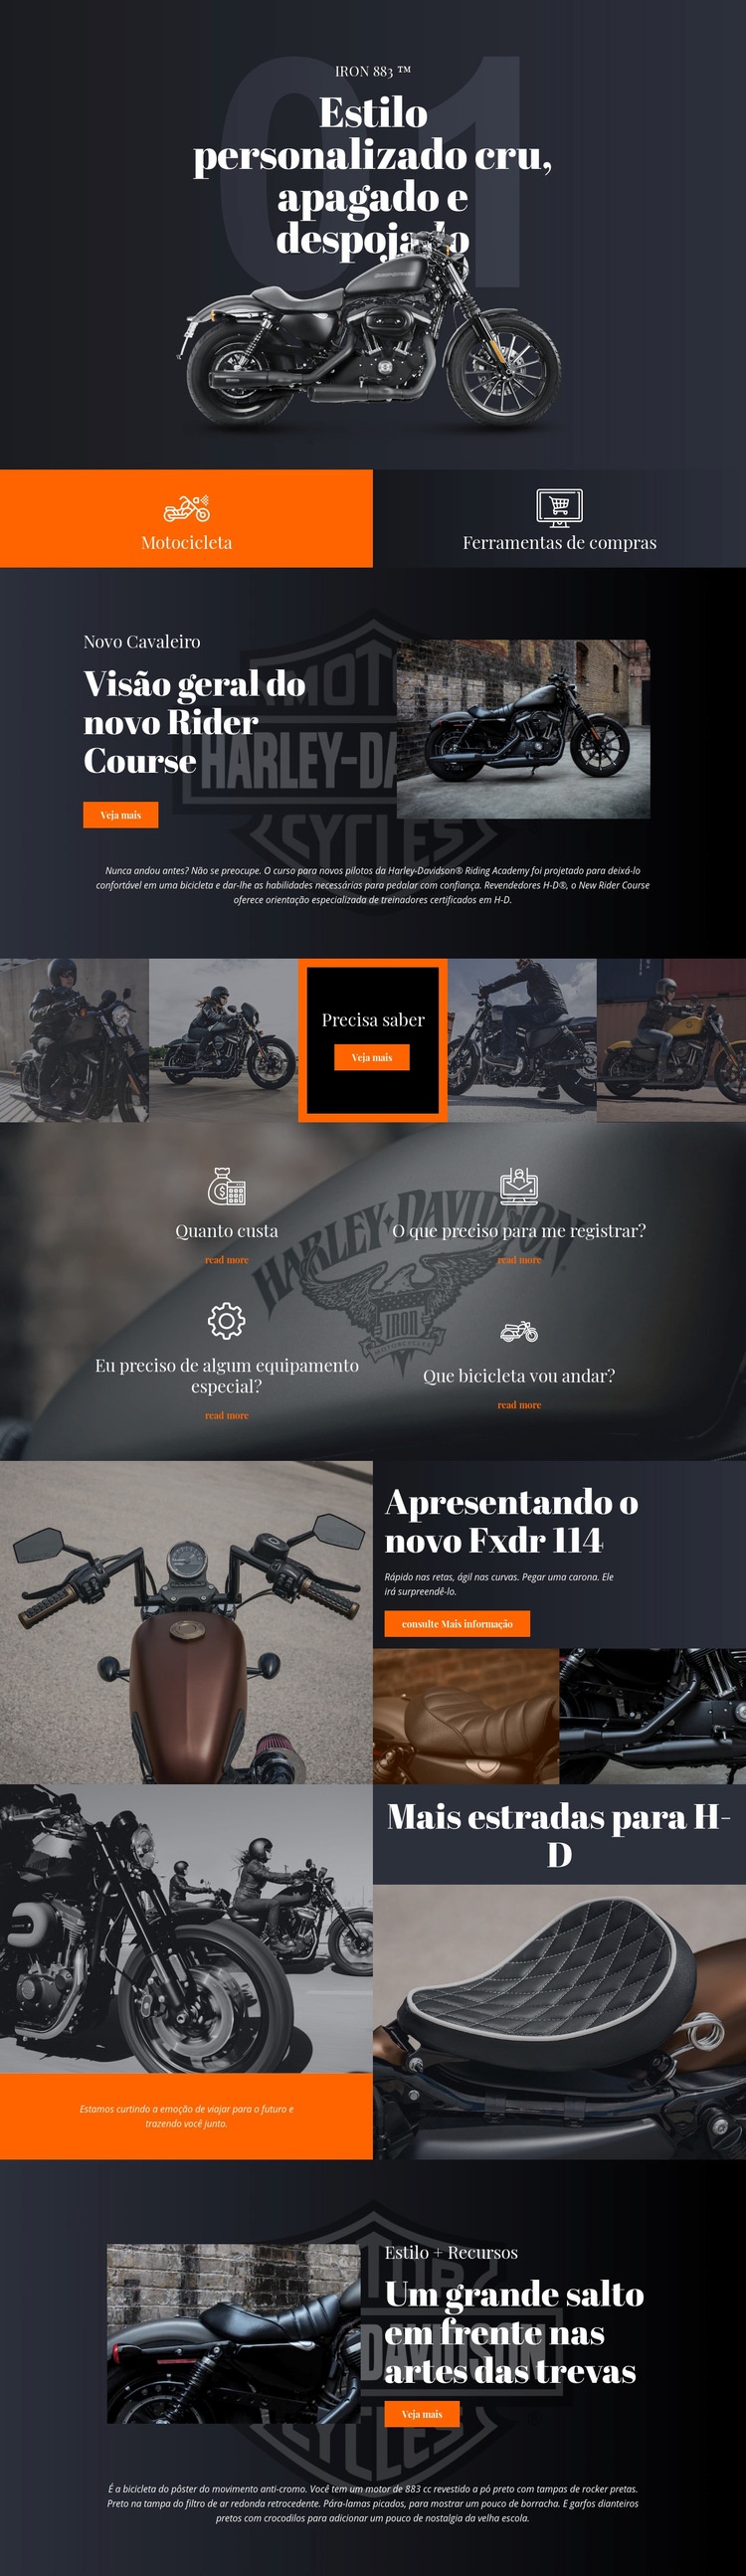 Harley Davidson Landing Page